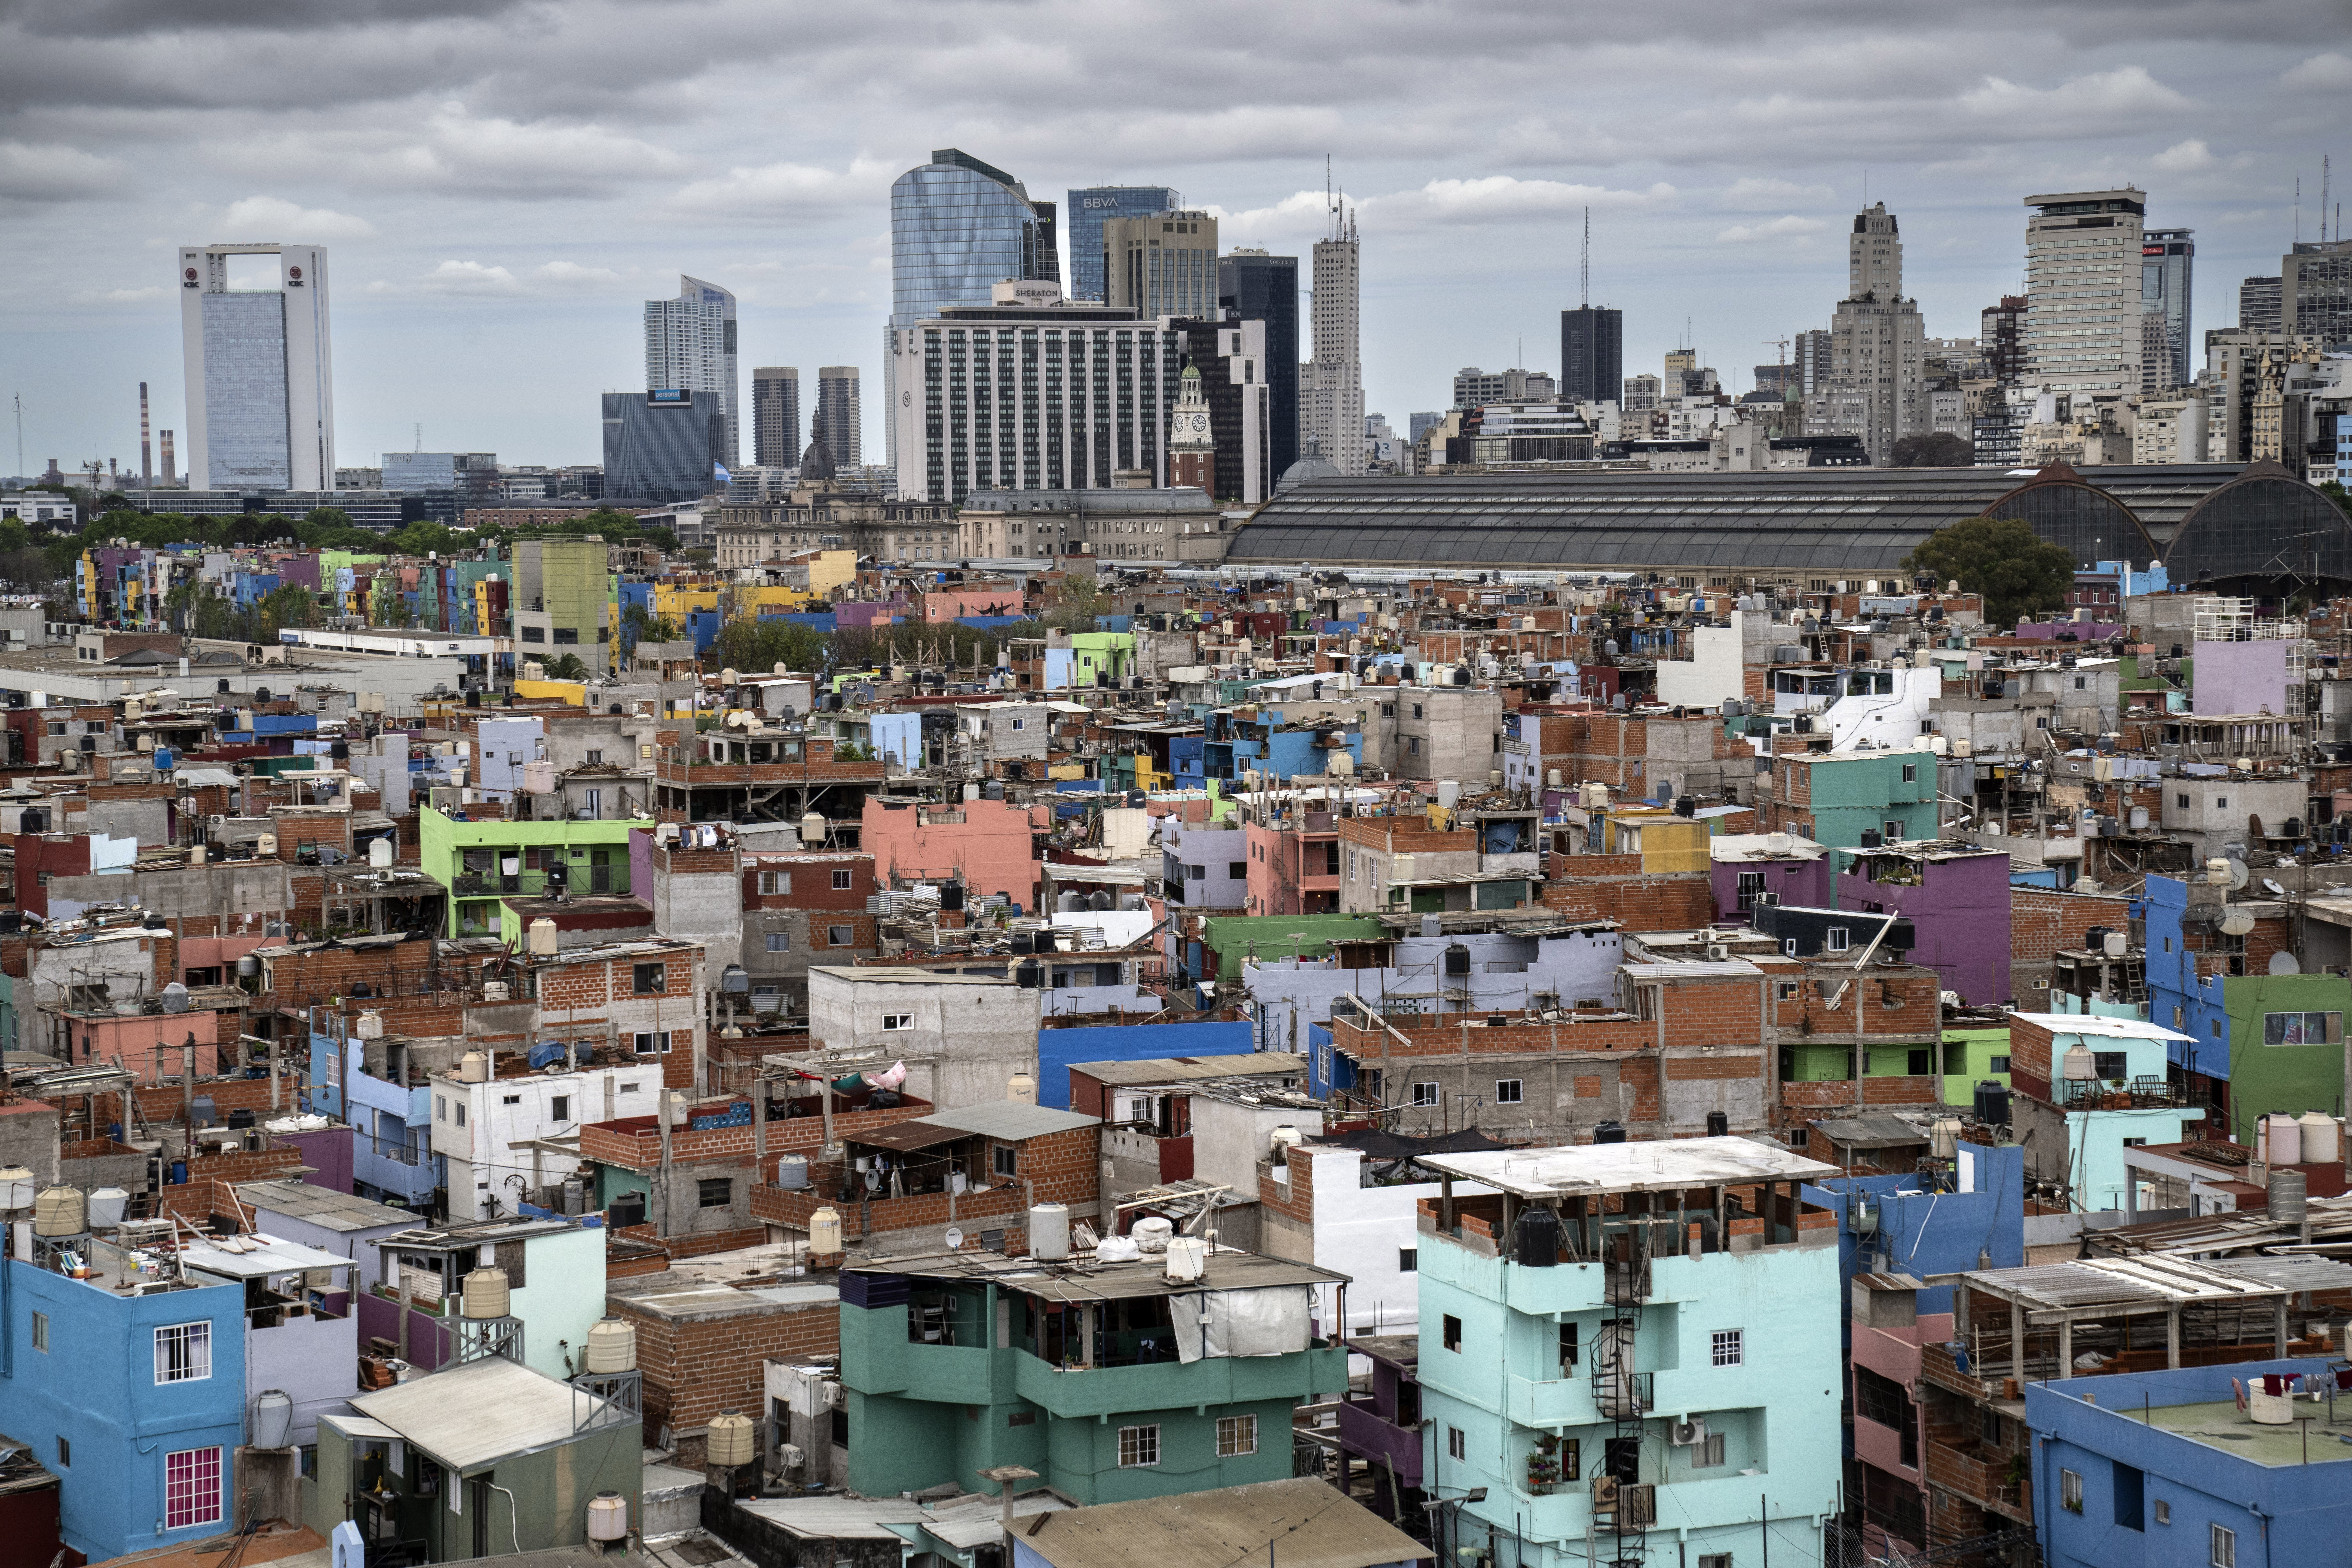 Αργεντινή: Πάνω από το 57% του πληθυσμού είναι βυθισμένο στη φτώχεια – Μελέτη αναδεικνύει ένα θλιβερό ρεκόρ 22ετίας